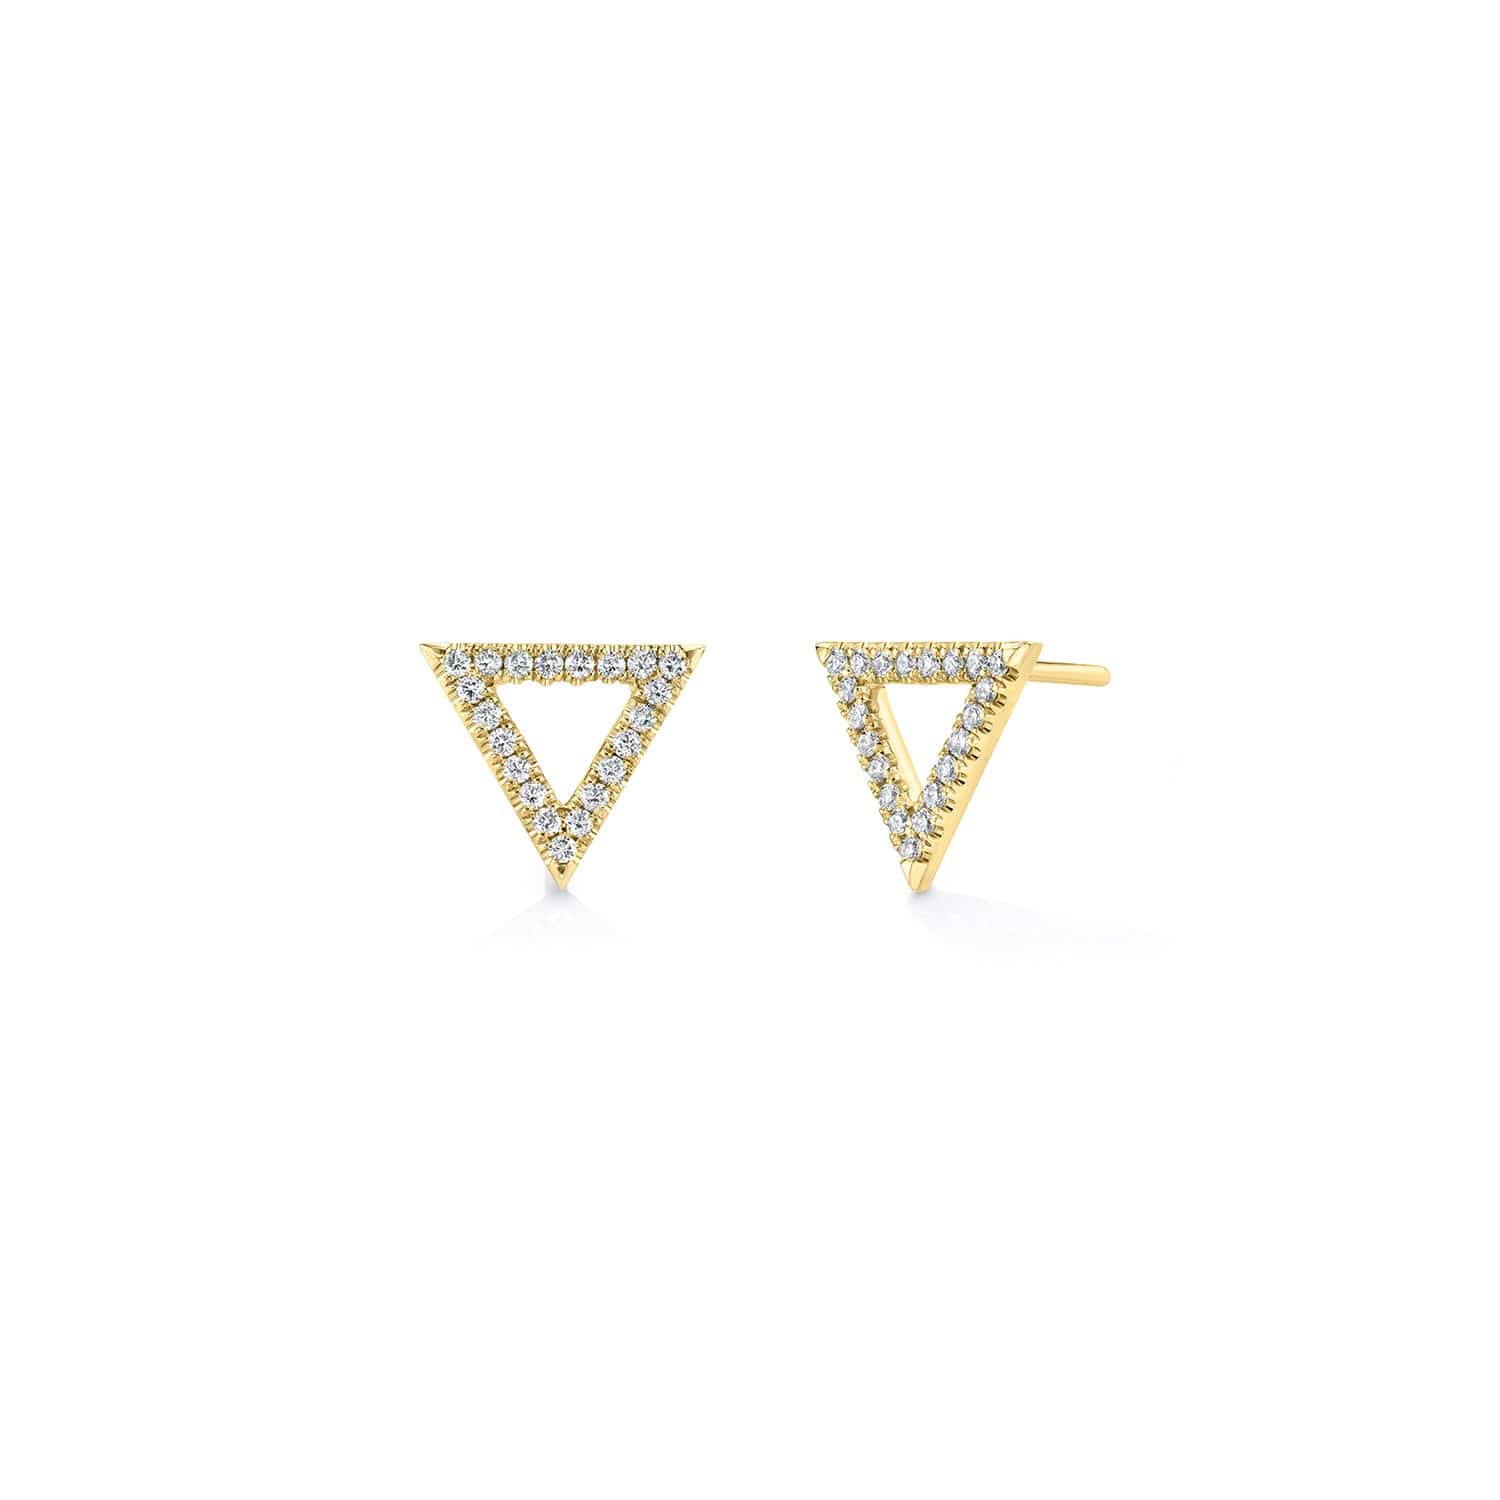 MICHAEL M Earrings 14K White Gold Diamond Triangle Earrings ER279WG